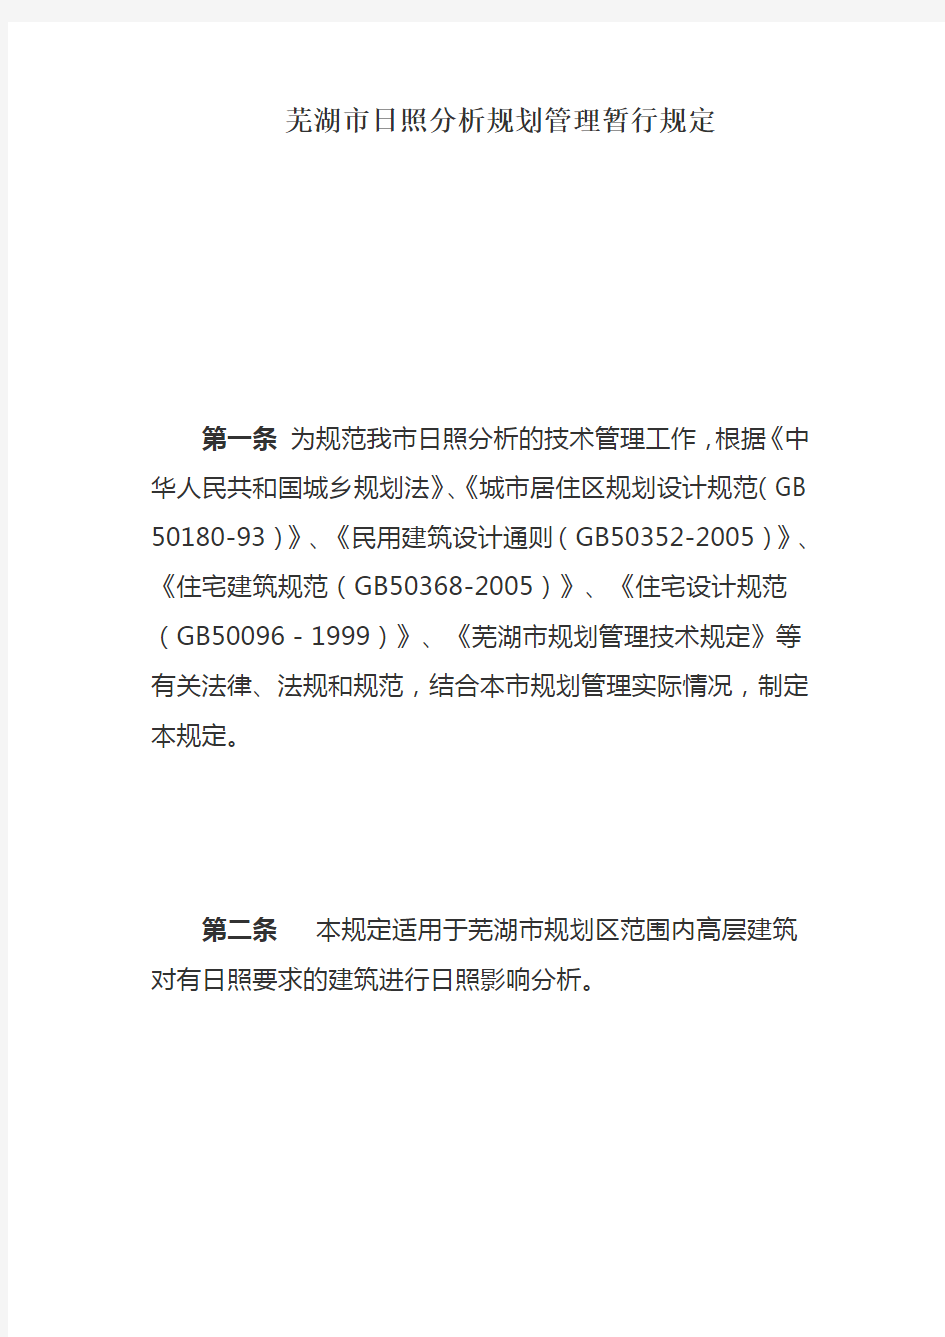 芜湖市日照分析规划管理暂行规定演示教学